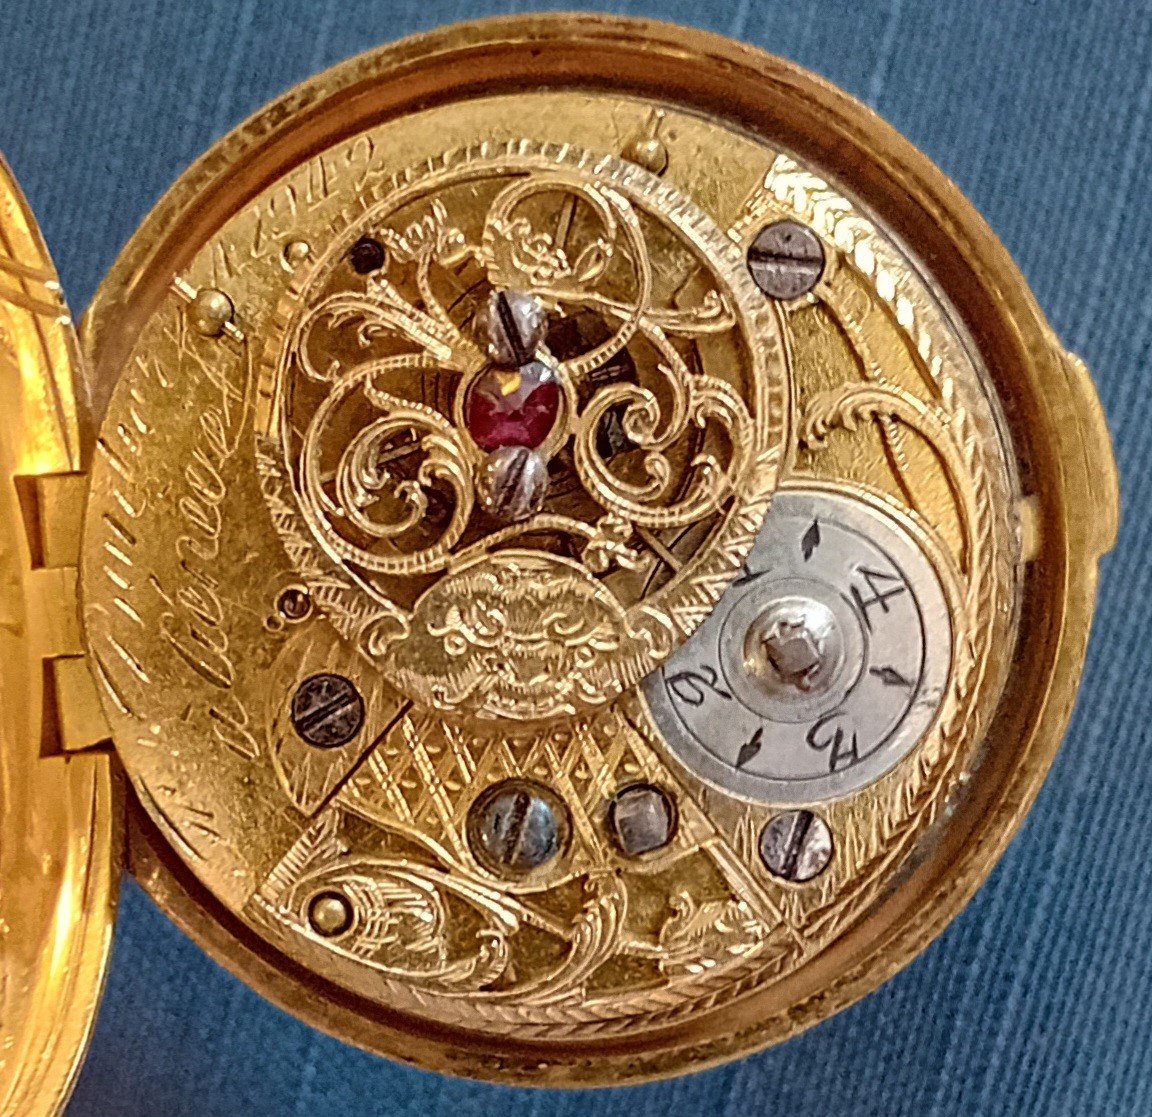 Bordier a Geneve,orologio in oro,metallo dorato,smalti e pietre semi preziose-photo-3